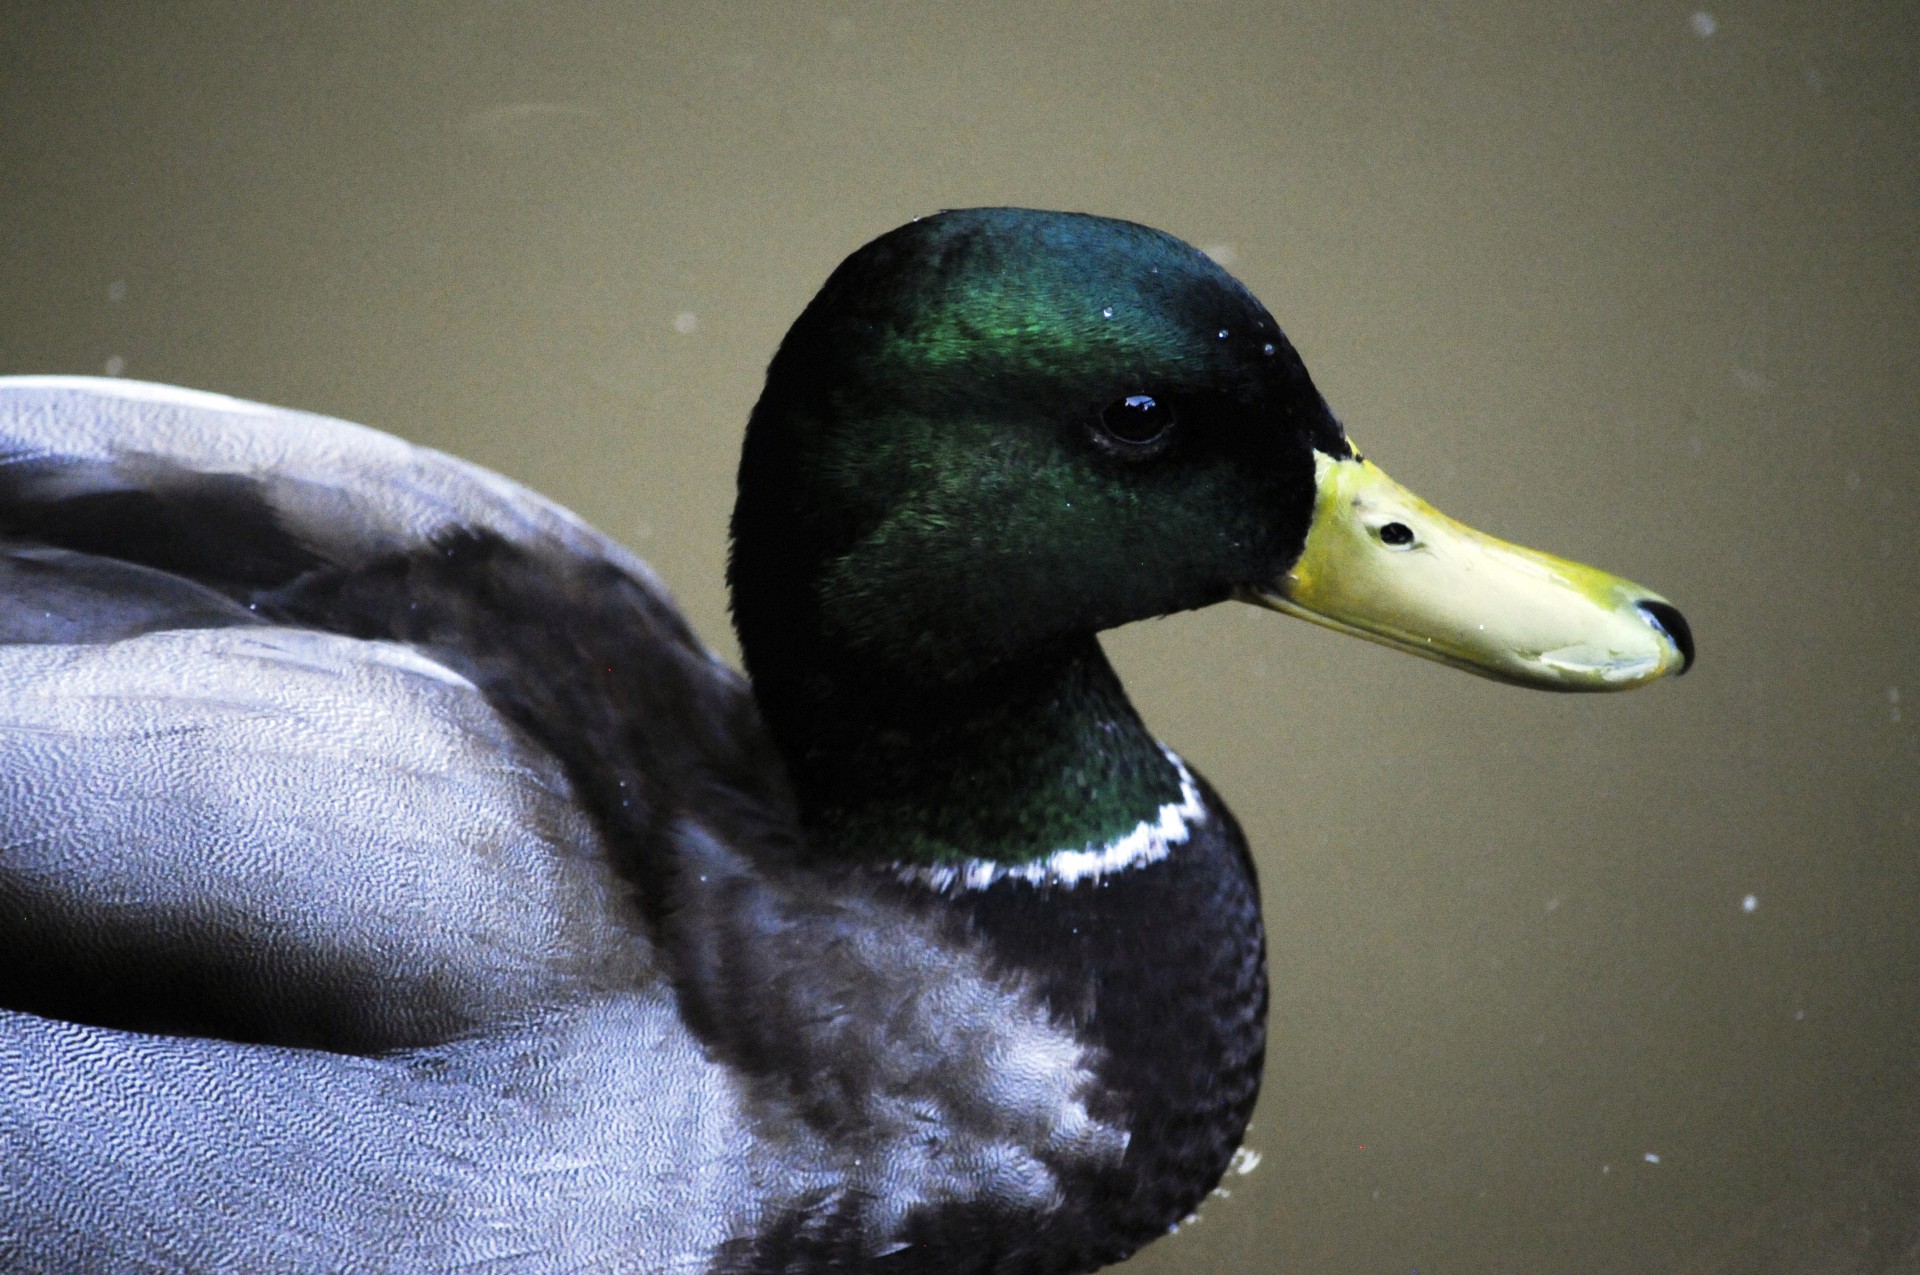 Barbat Mallard Duck